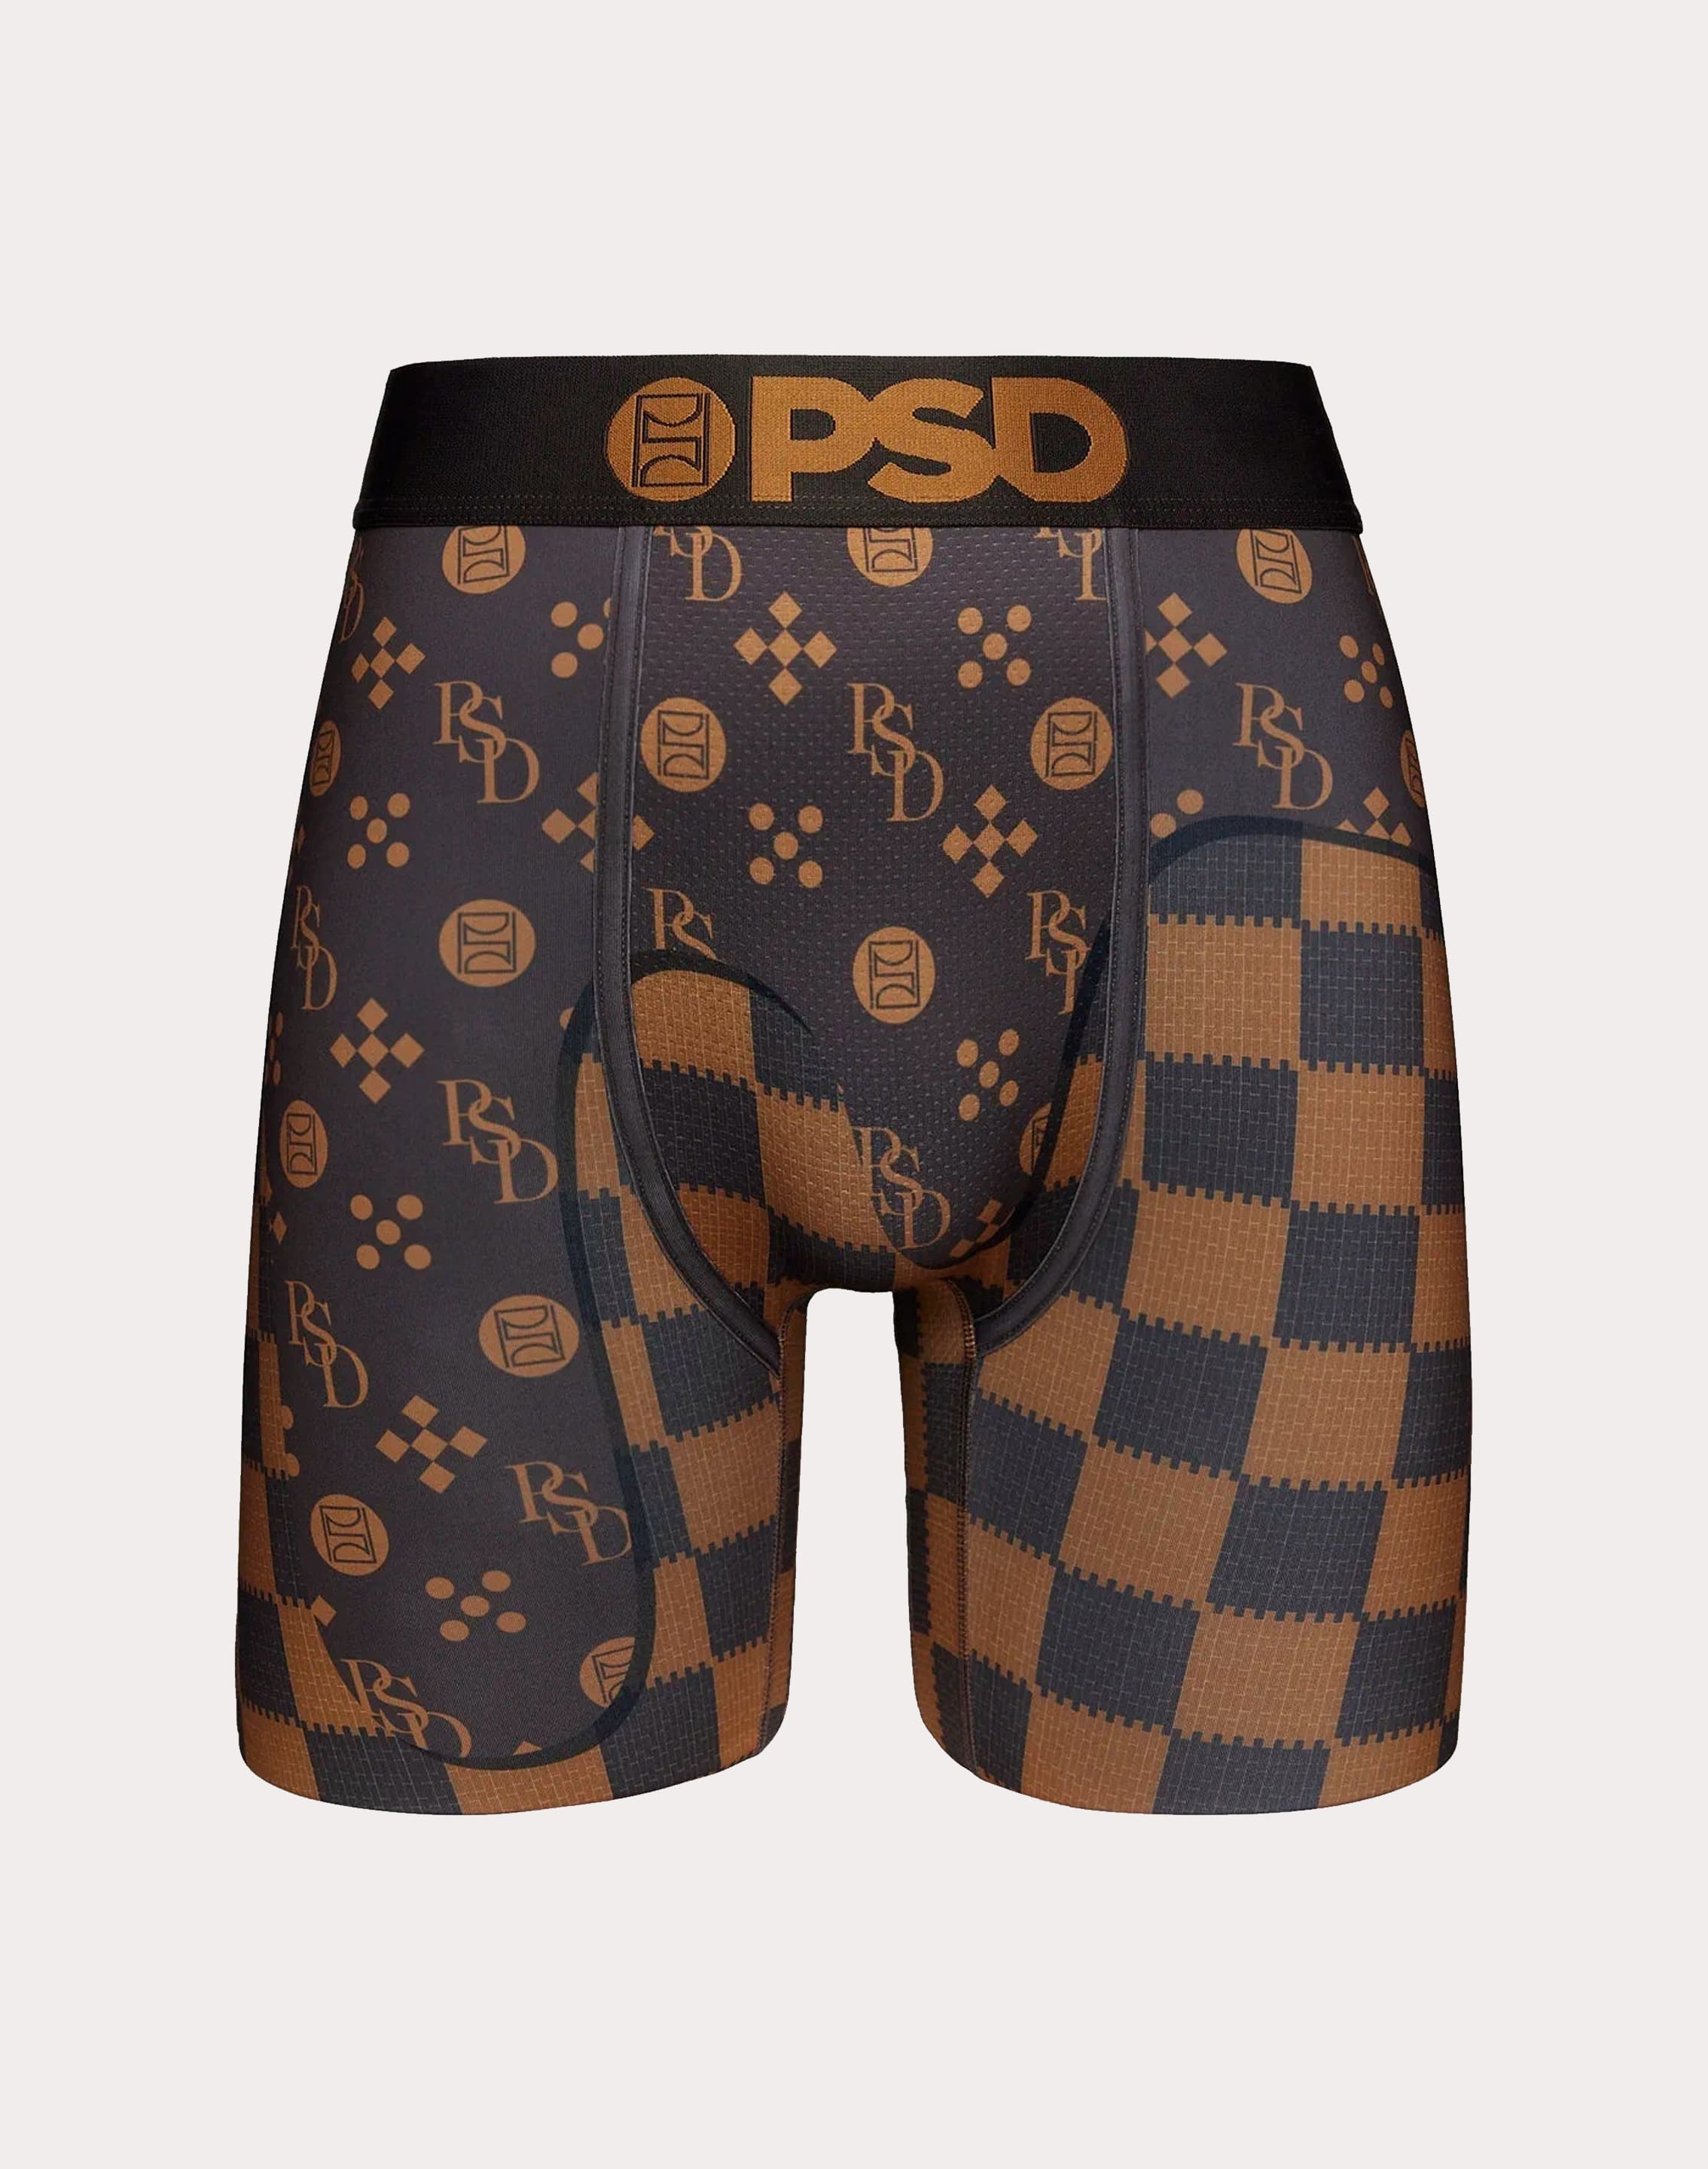 Psd Underwear Kaleidosmoke Boy Shorts – DTLR